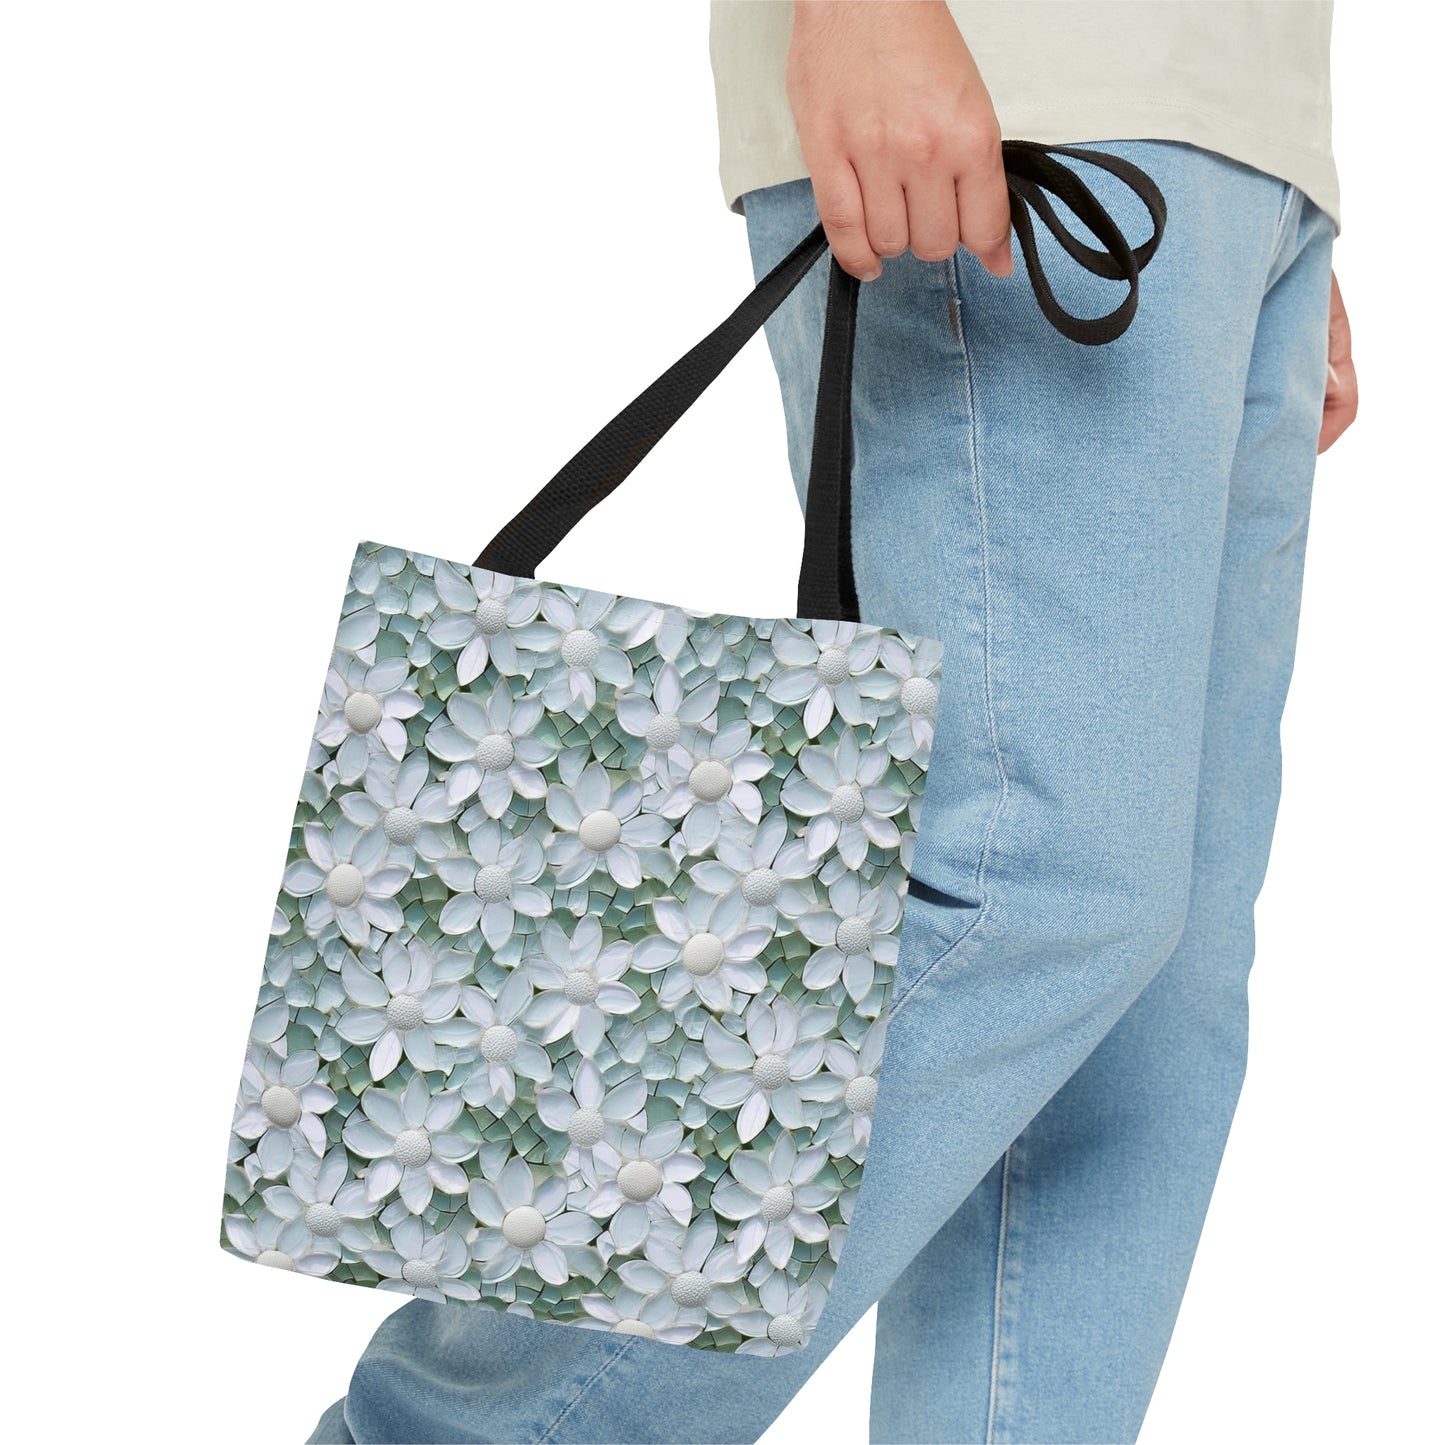 Beautiful and Unique - White Lotus Mosaic 11 - Useful, Multipurpose Bag -Tote Bag (AOP)